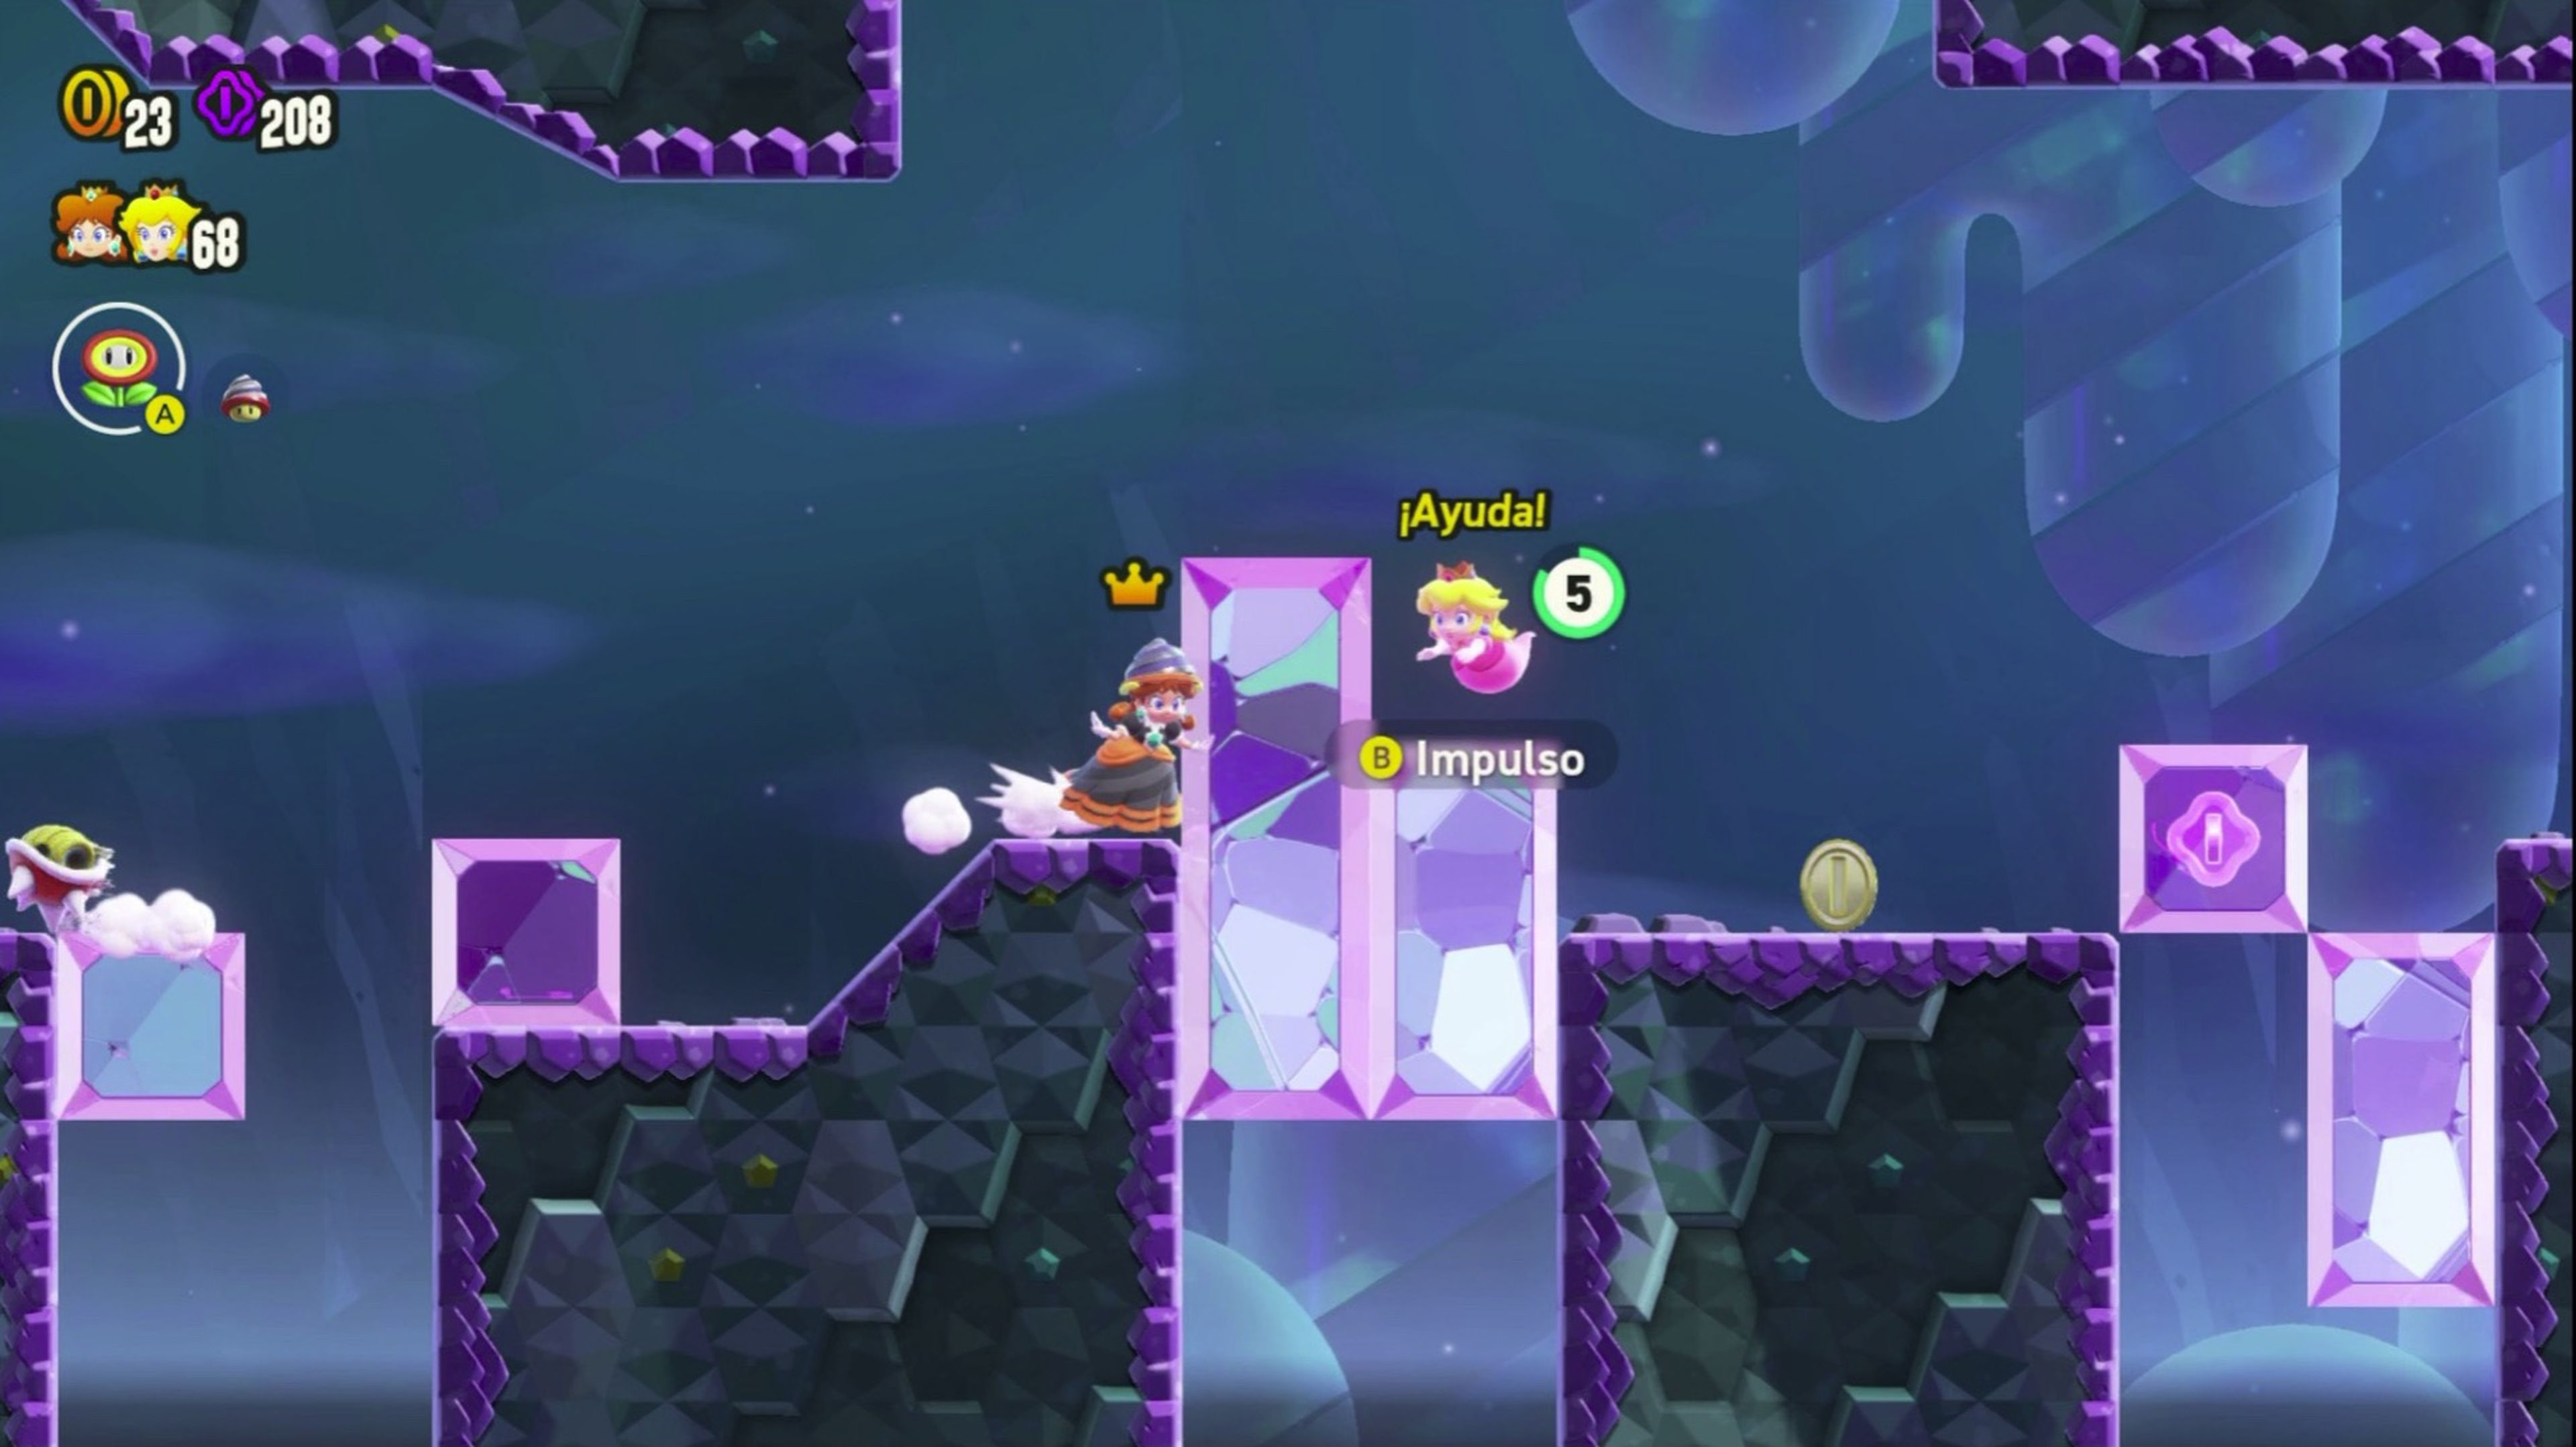 Super Mario Bros. Wonder en Nintendo Switch, avance. Preview con gameplay,  precio y experiencia de juego